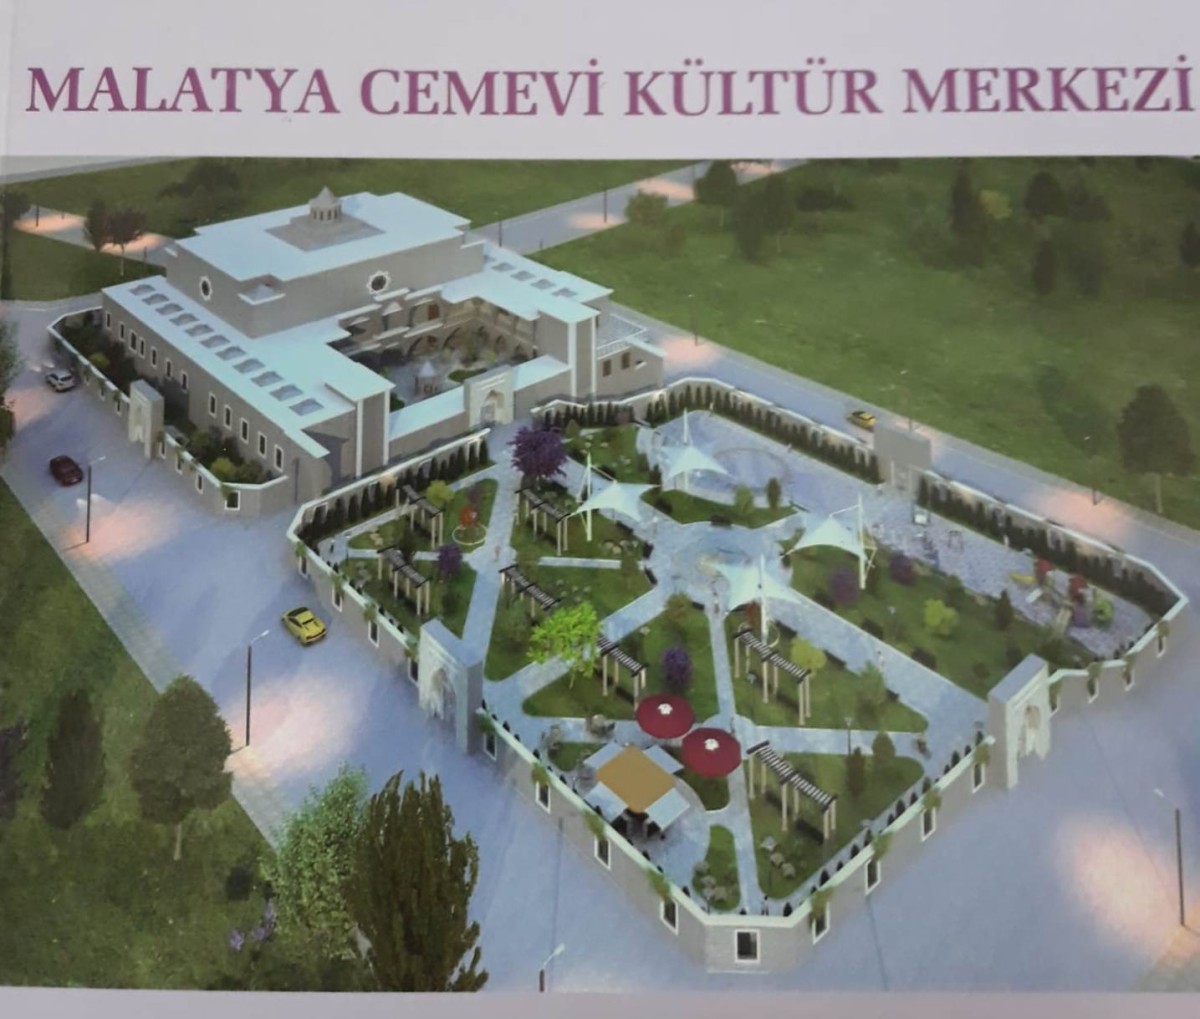 Türkiye'deki en büyük cemevlerinden birisi olacak Malatya Cemevi ve Kültür Merkezi'nin temeli atılıyor